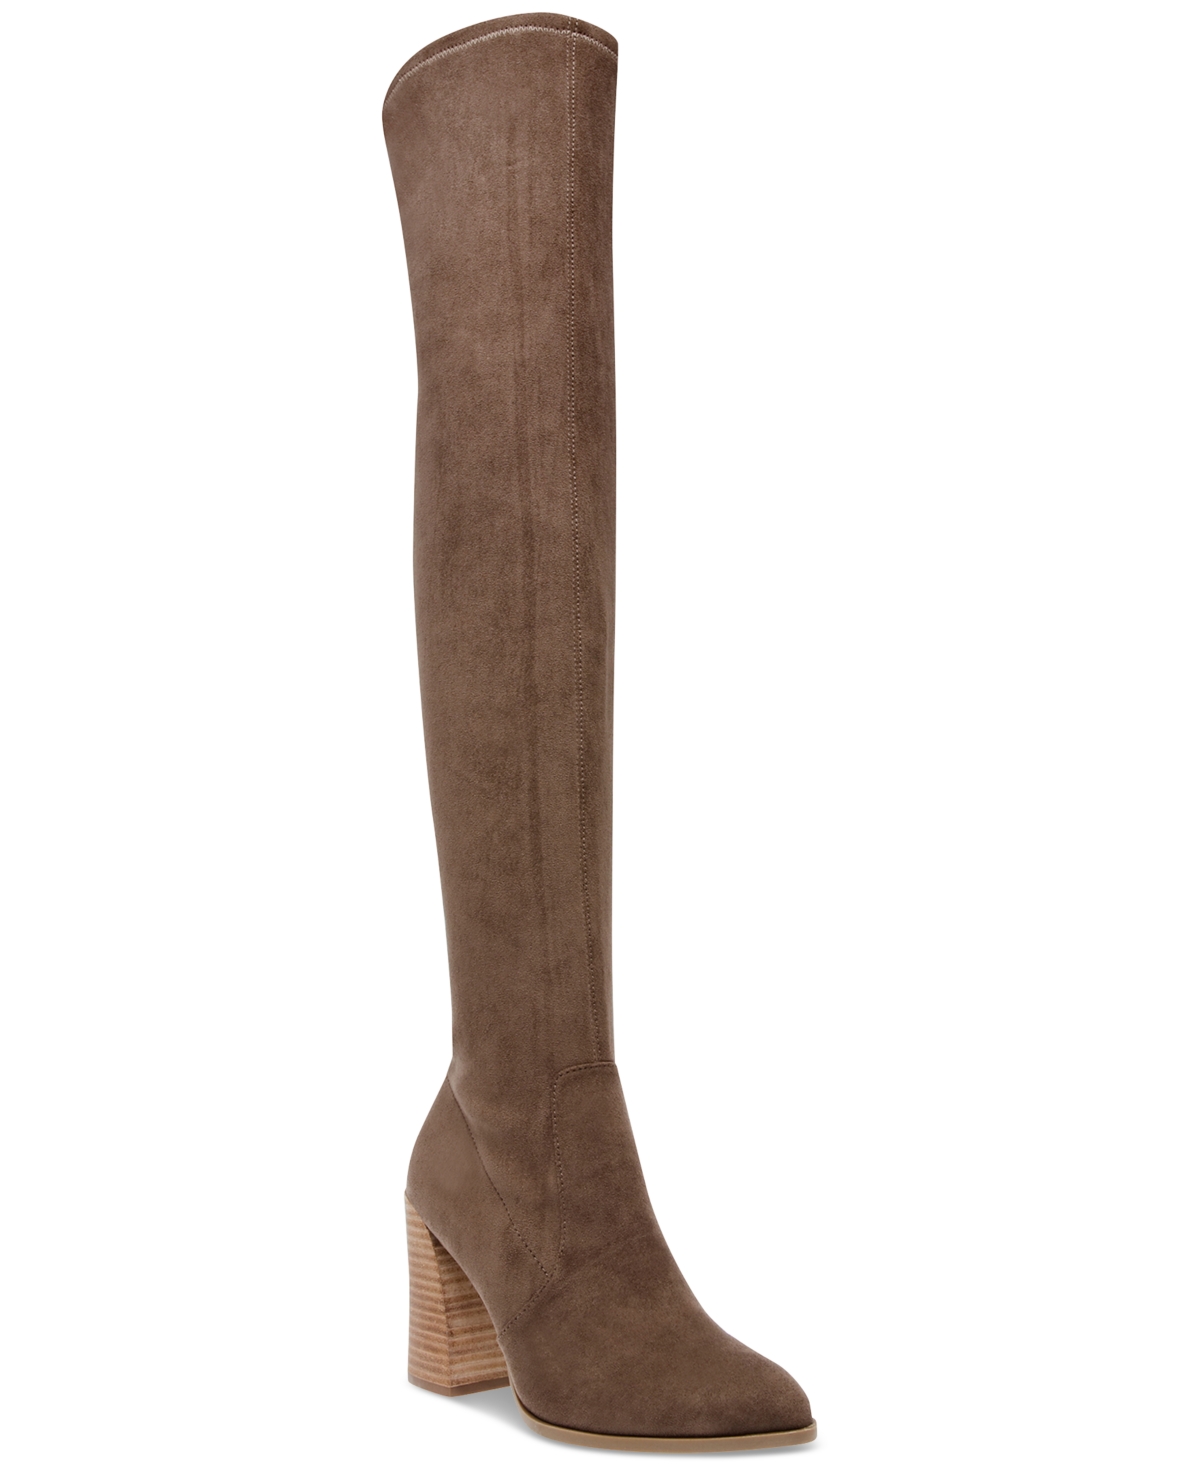 Women's Gollie Block Heel Over-The-Knee Boots - Mushroom